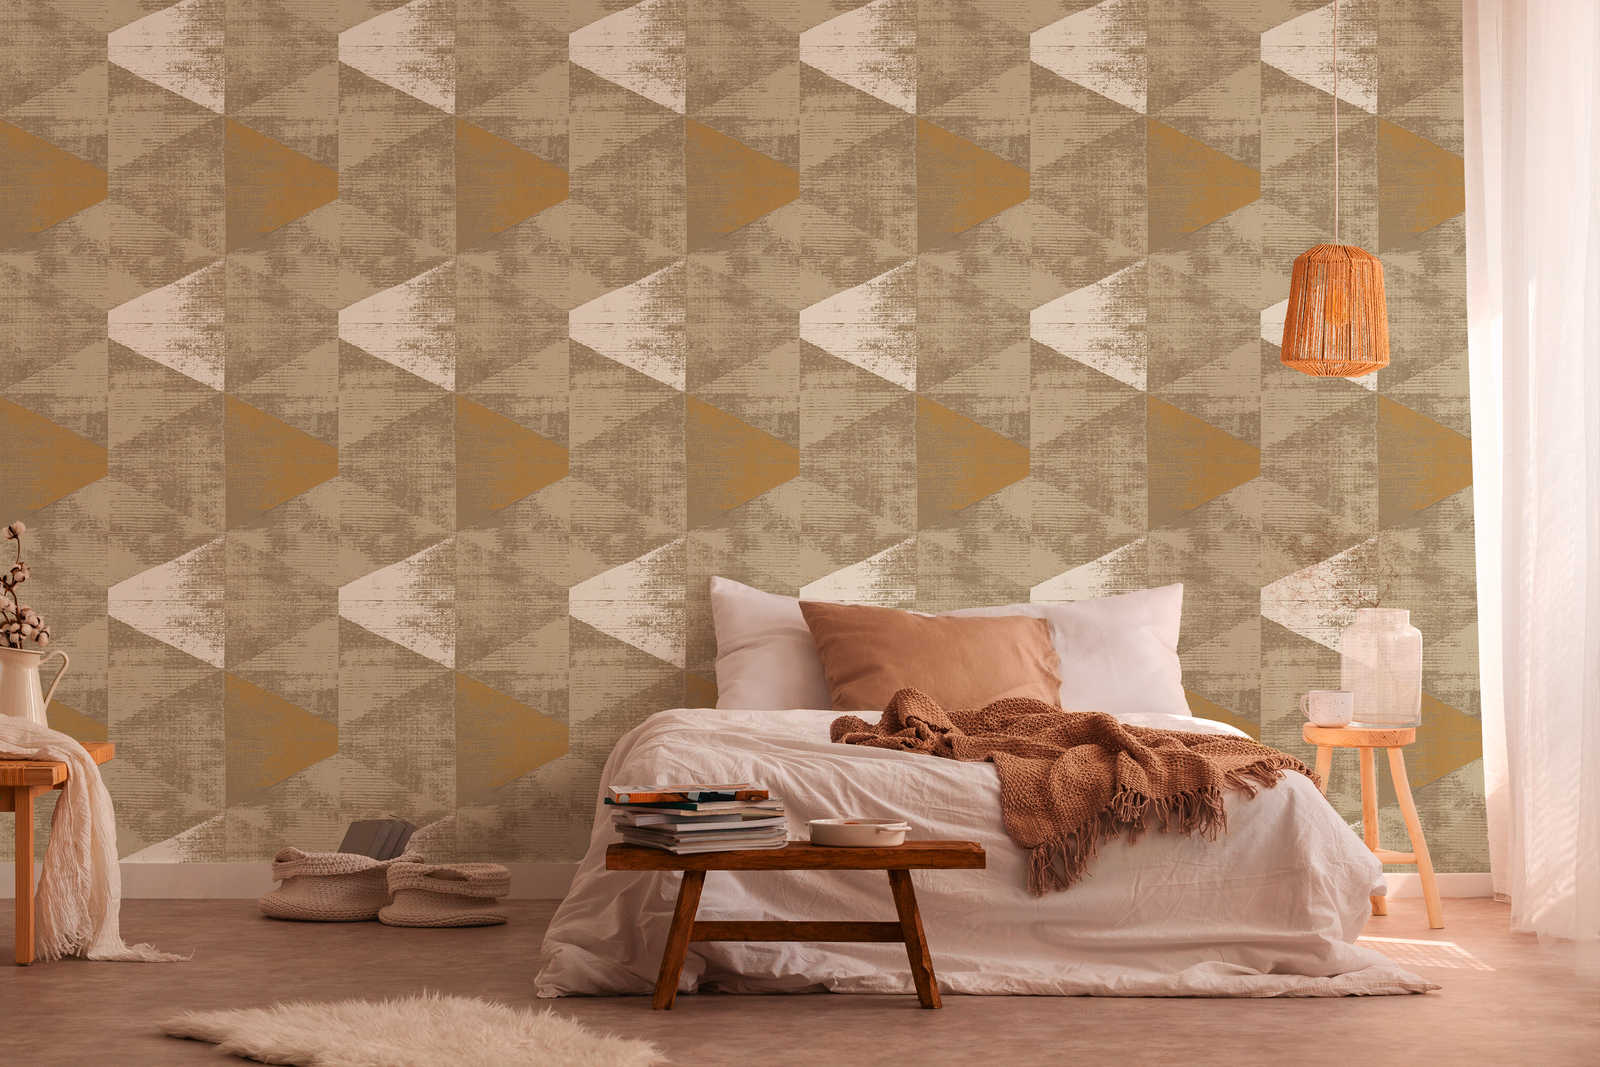             Wallpaper industrial style with rustic metallic look - metallic, beige
        